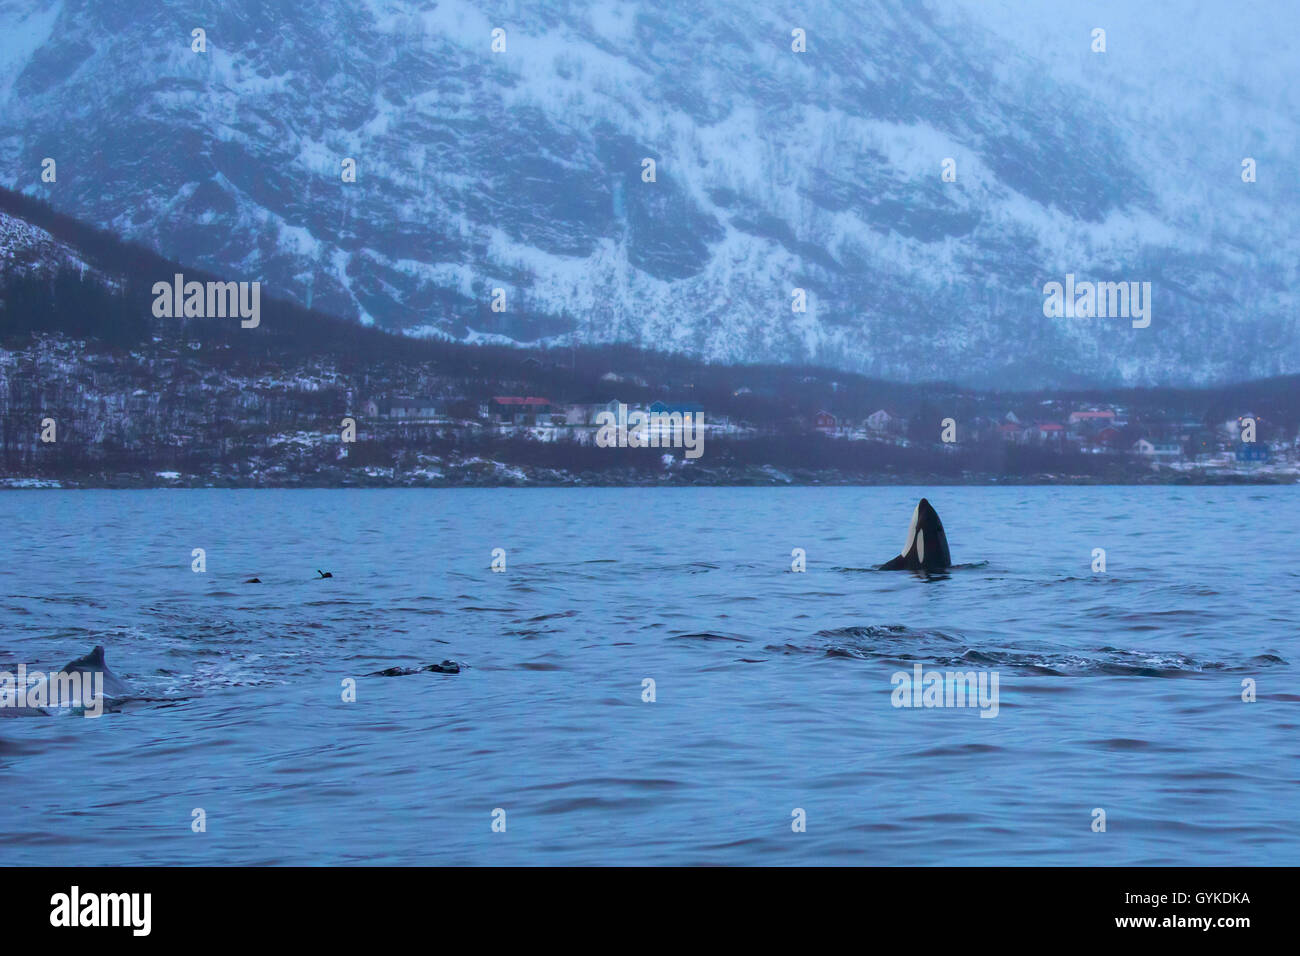 Orca, grande balena killer, grampus (Orcinus orca), spy hop, maschio esplorando l'ambiente al di fuori dell'acqua, Norvegia, Troms, Bergsfjorden auf Senja Foto Stock